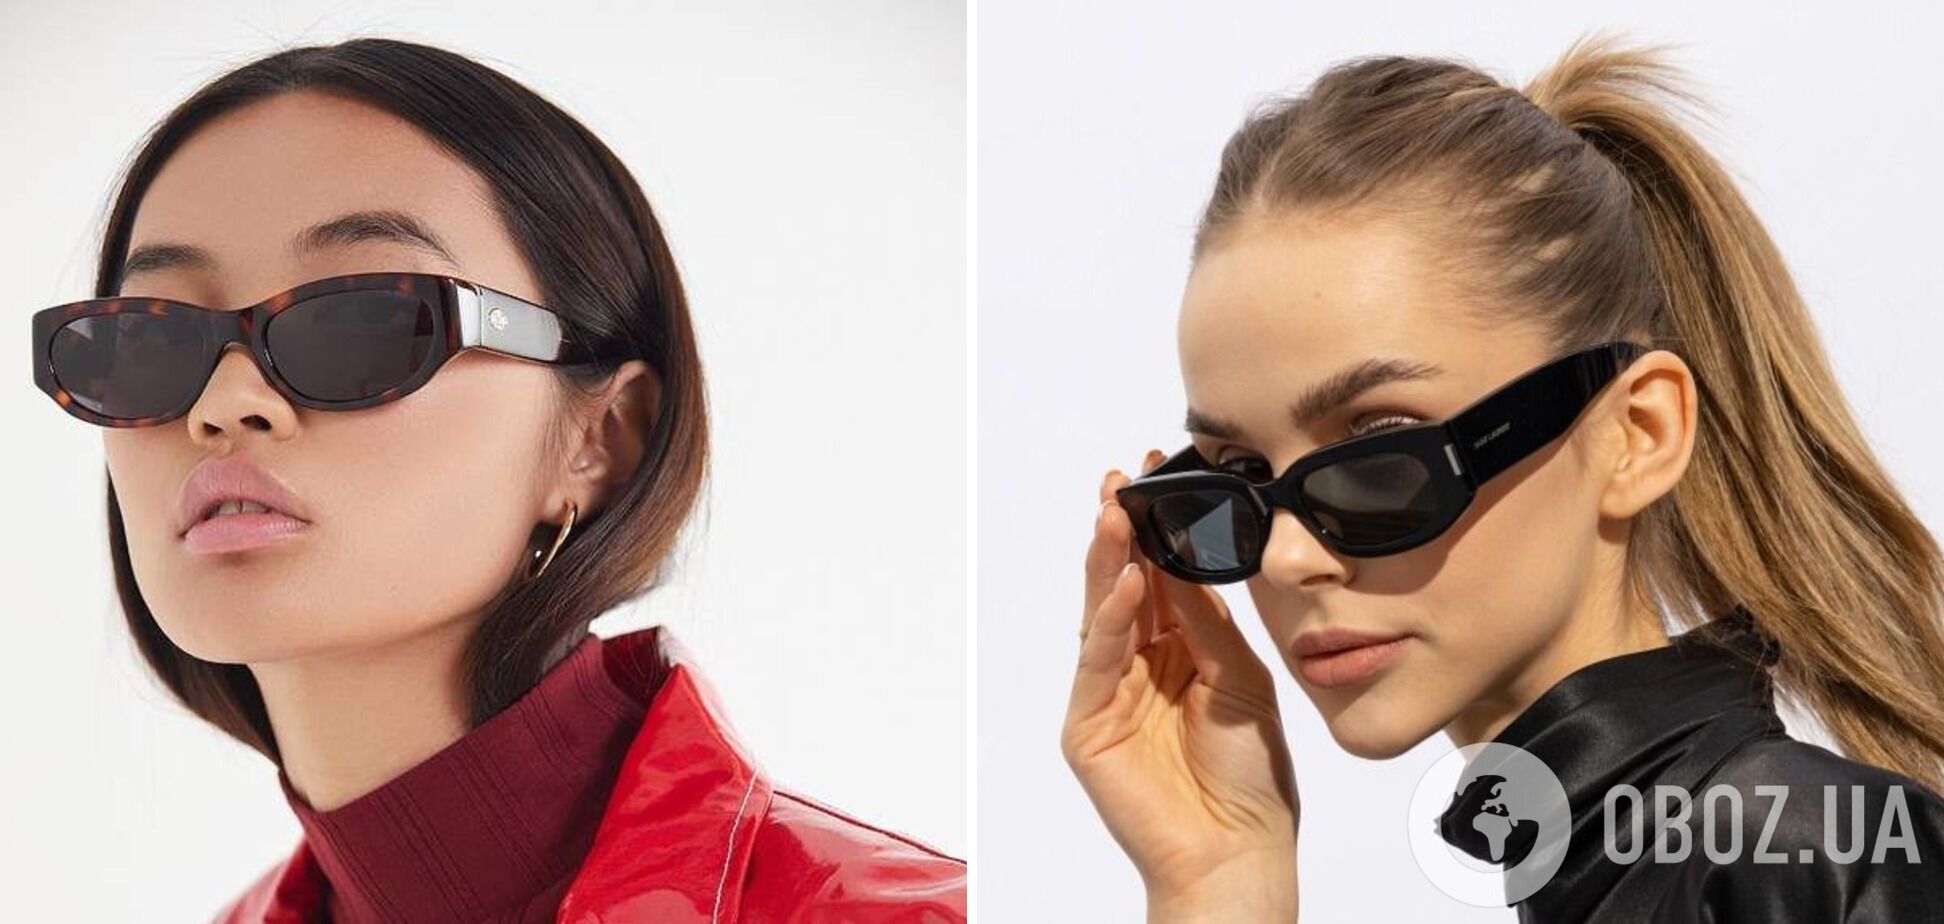 6 устаревших моделей солнцезащитных очков, неожиданно вернувшихся в моду: все будут делать вам комплименты